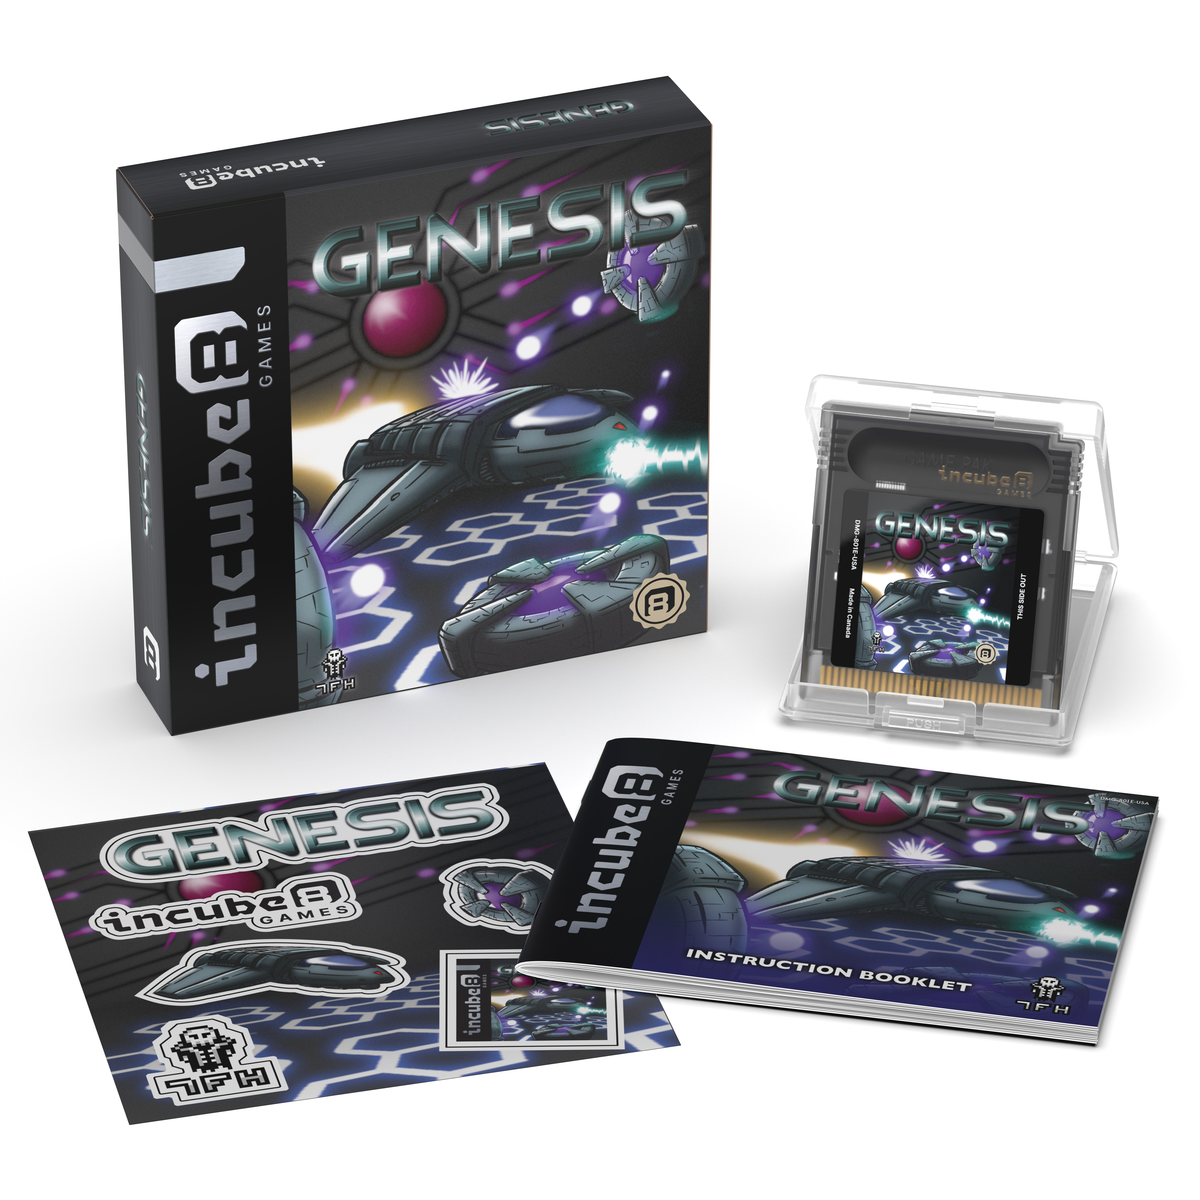 Genesis (GB) – Incube8 Games